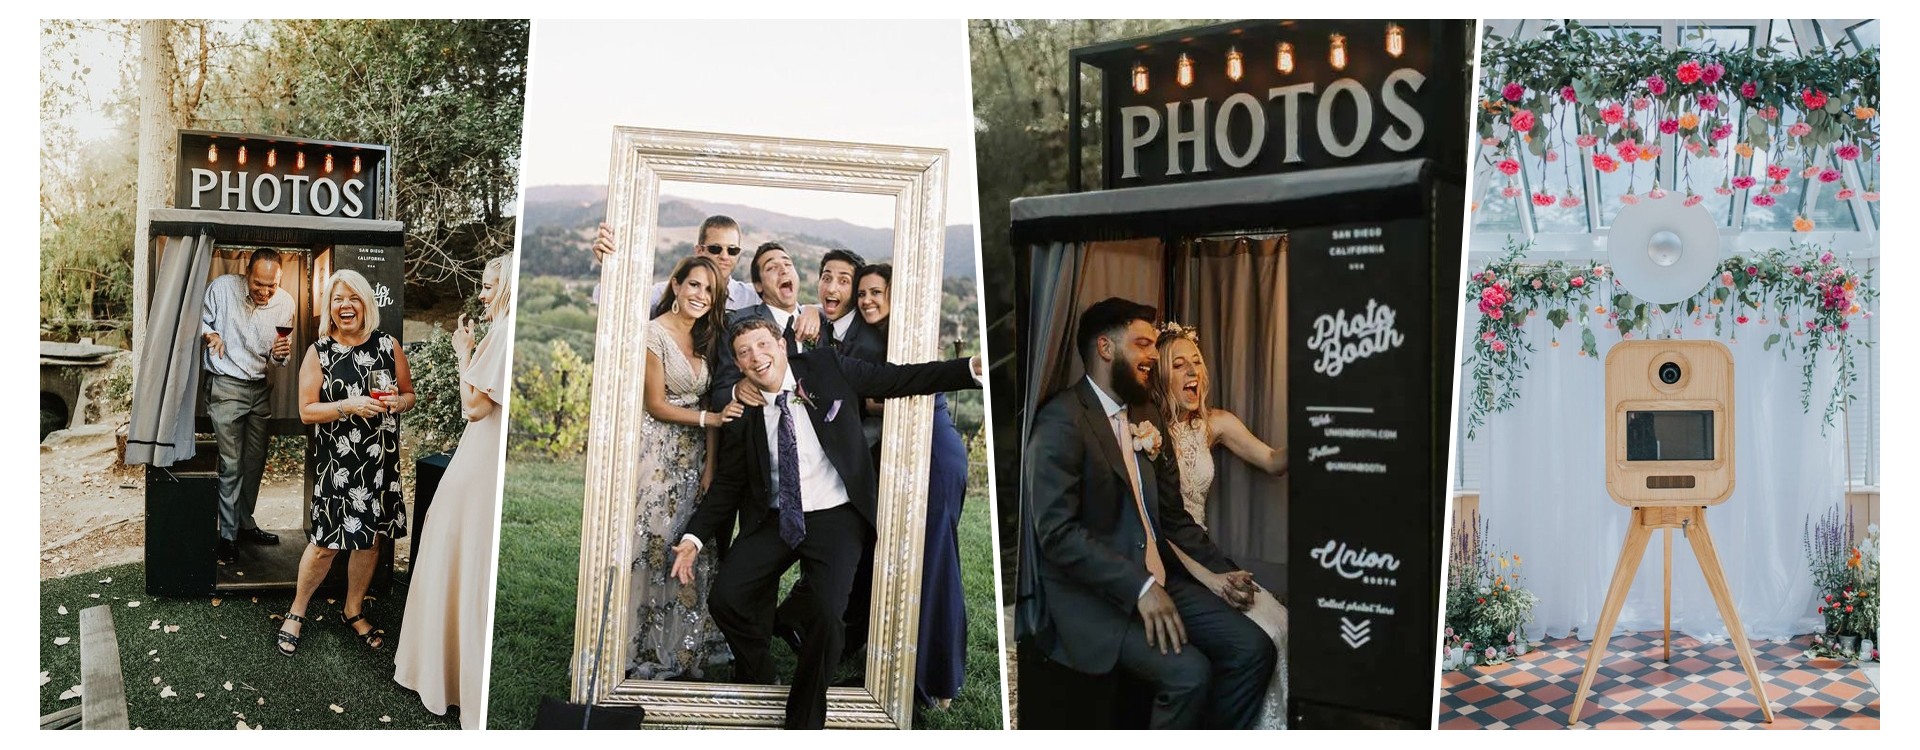 Louez un photobooth pour un mariage encore plus réussi !